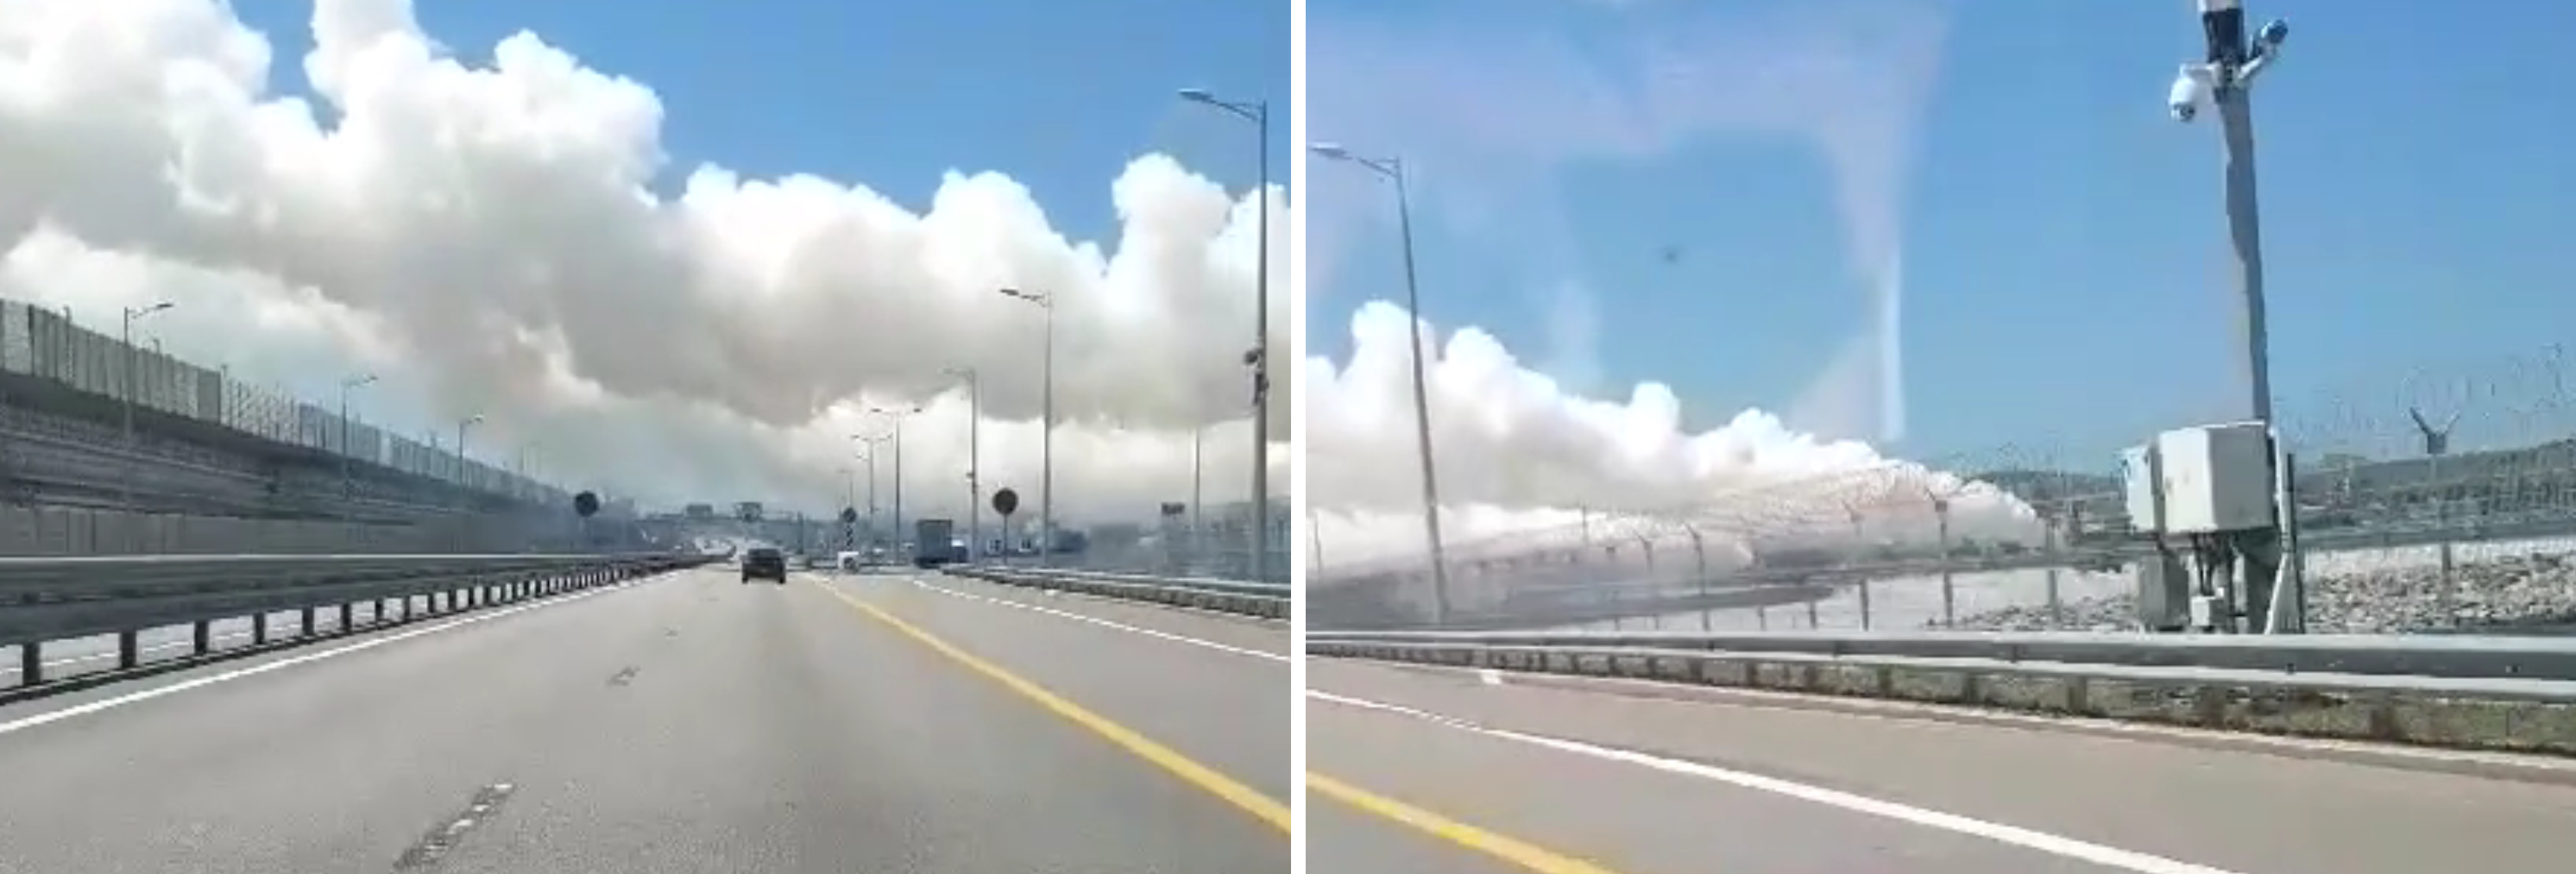 Nad mostem krymskim pojawiły się ogromne kłęby dymu